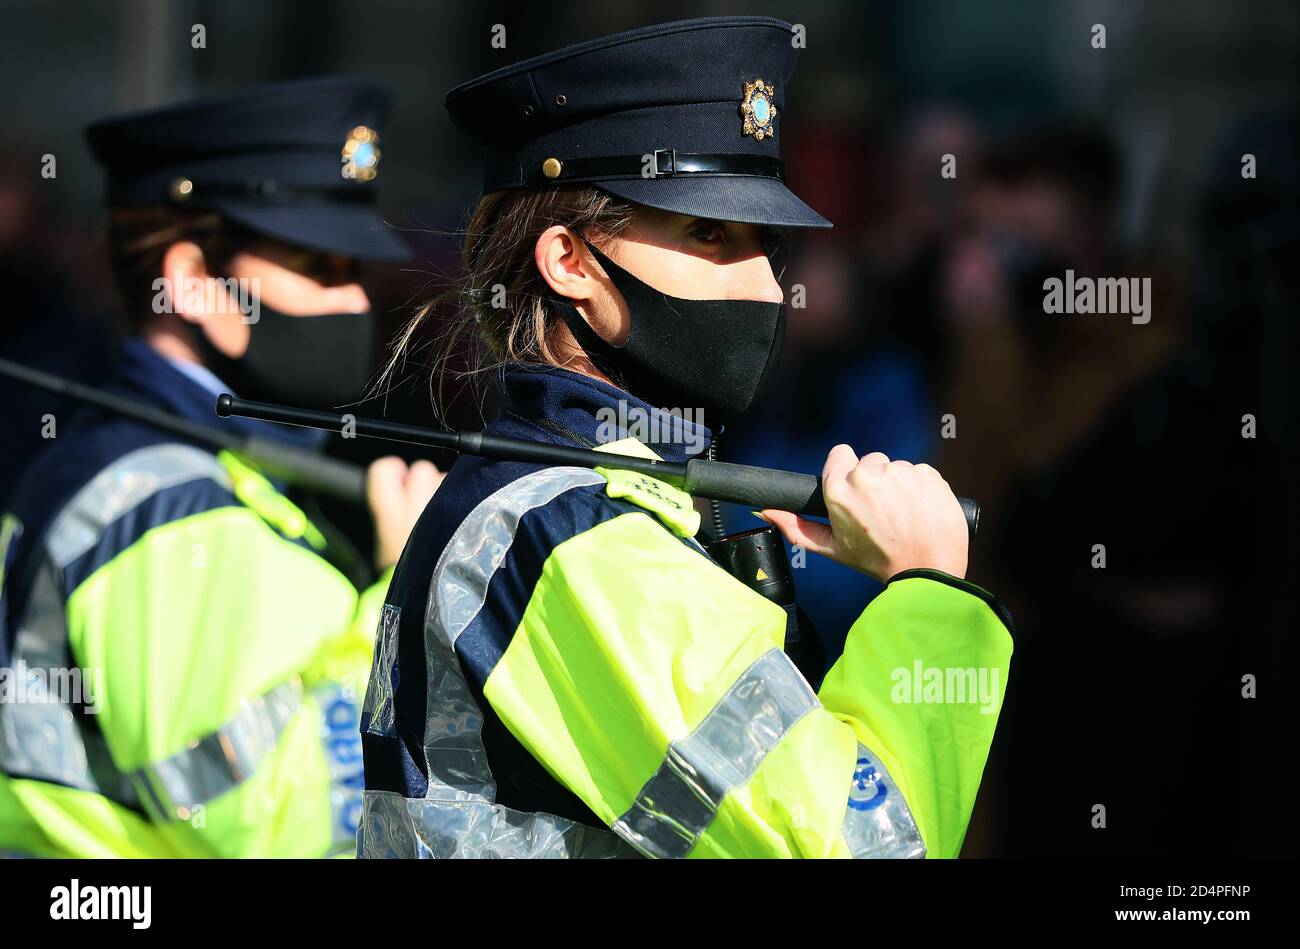 Les membres d'an Garda assistent à une manifestation anti-verrouillage à l'extérieur de Leinster House, à Dublin, alors que l'Irlande continue d'être dans une écluse nationale de niveau 3 du coronavirus. Banque D'Images